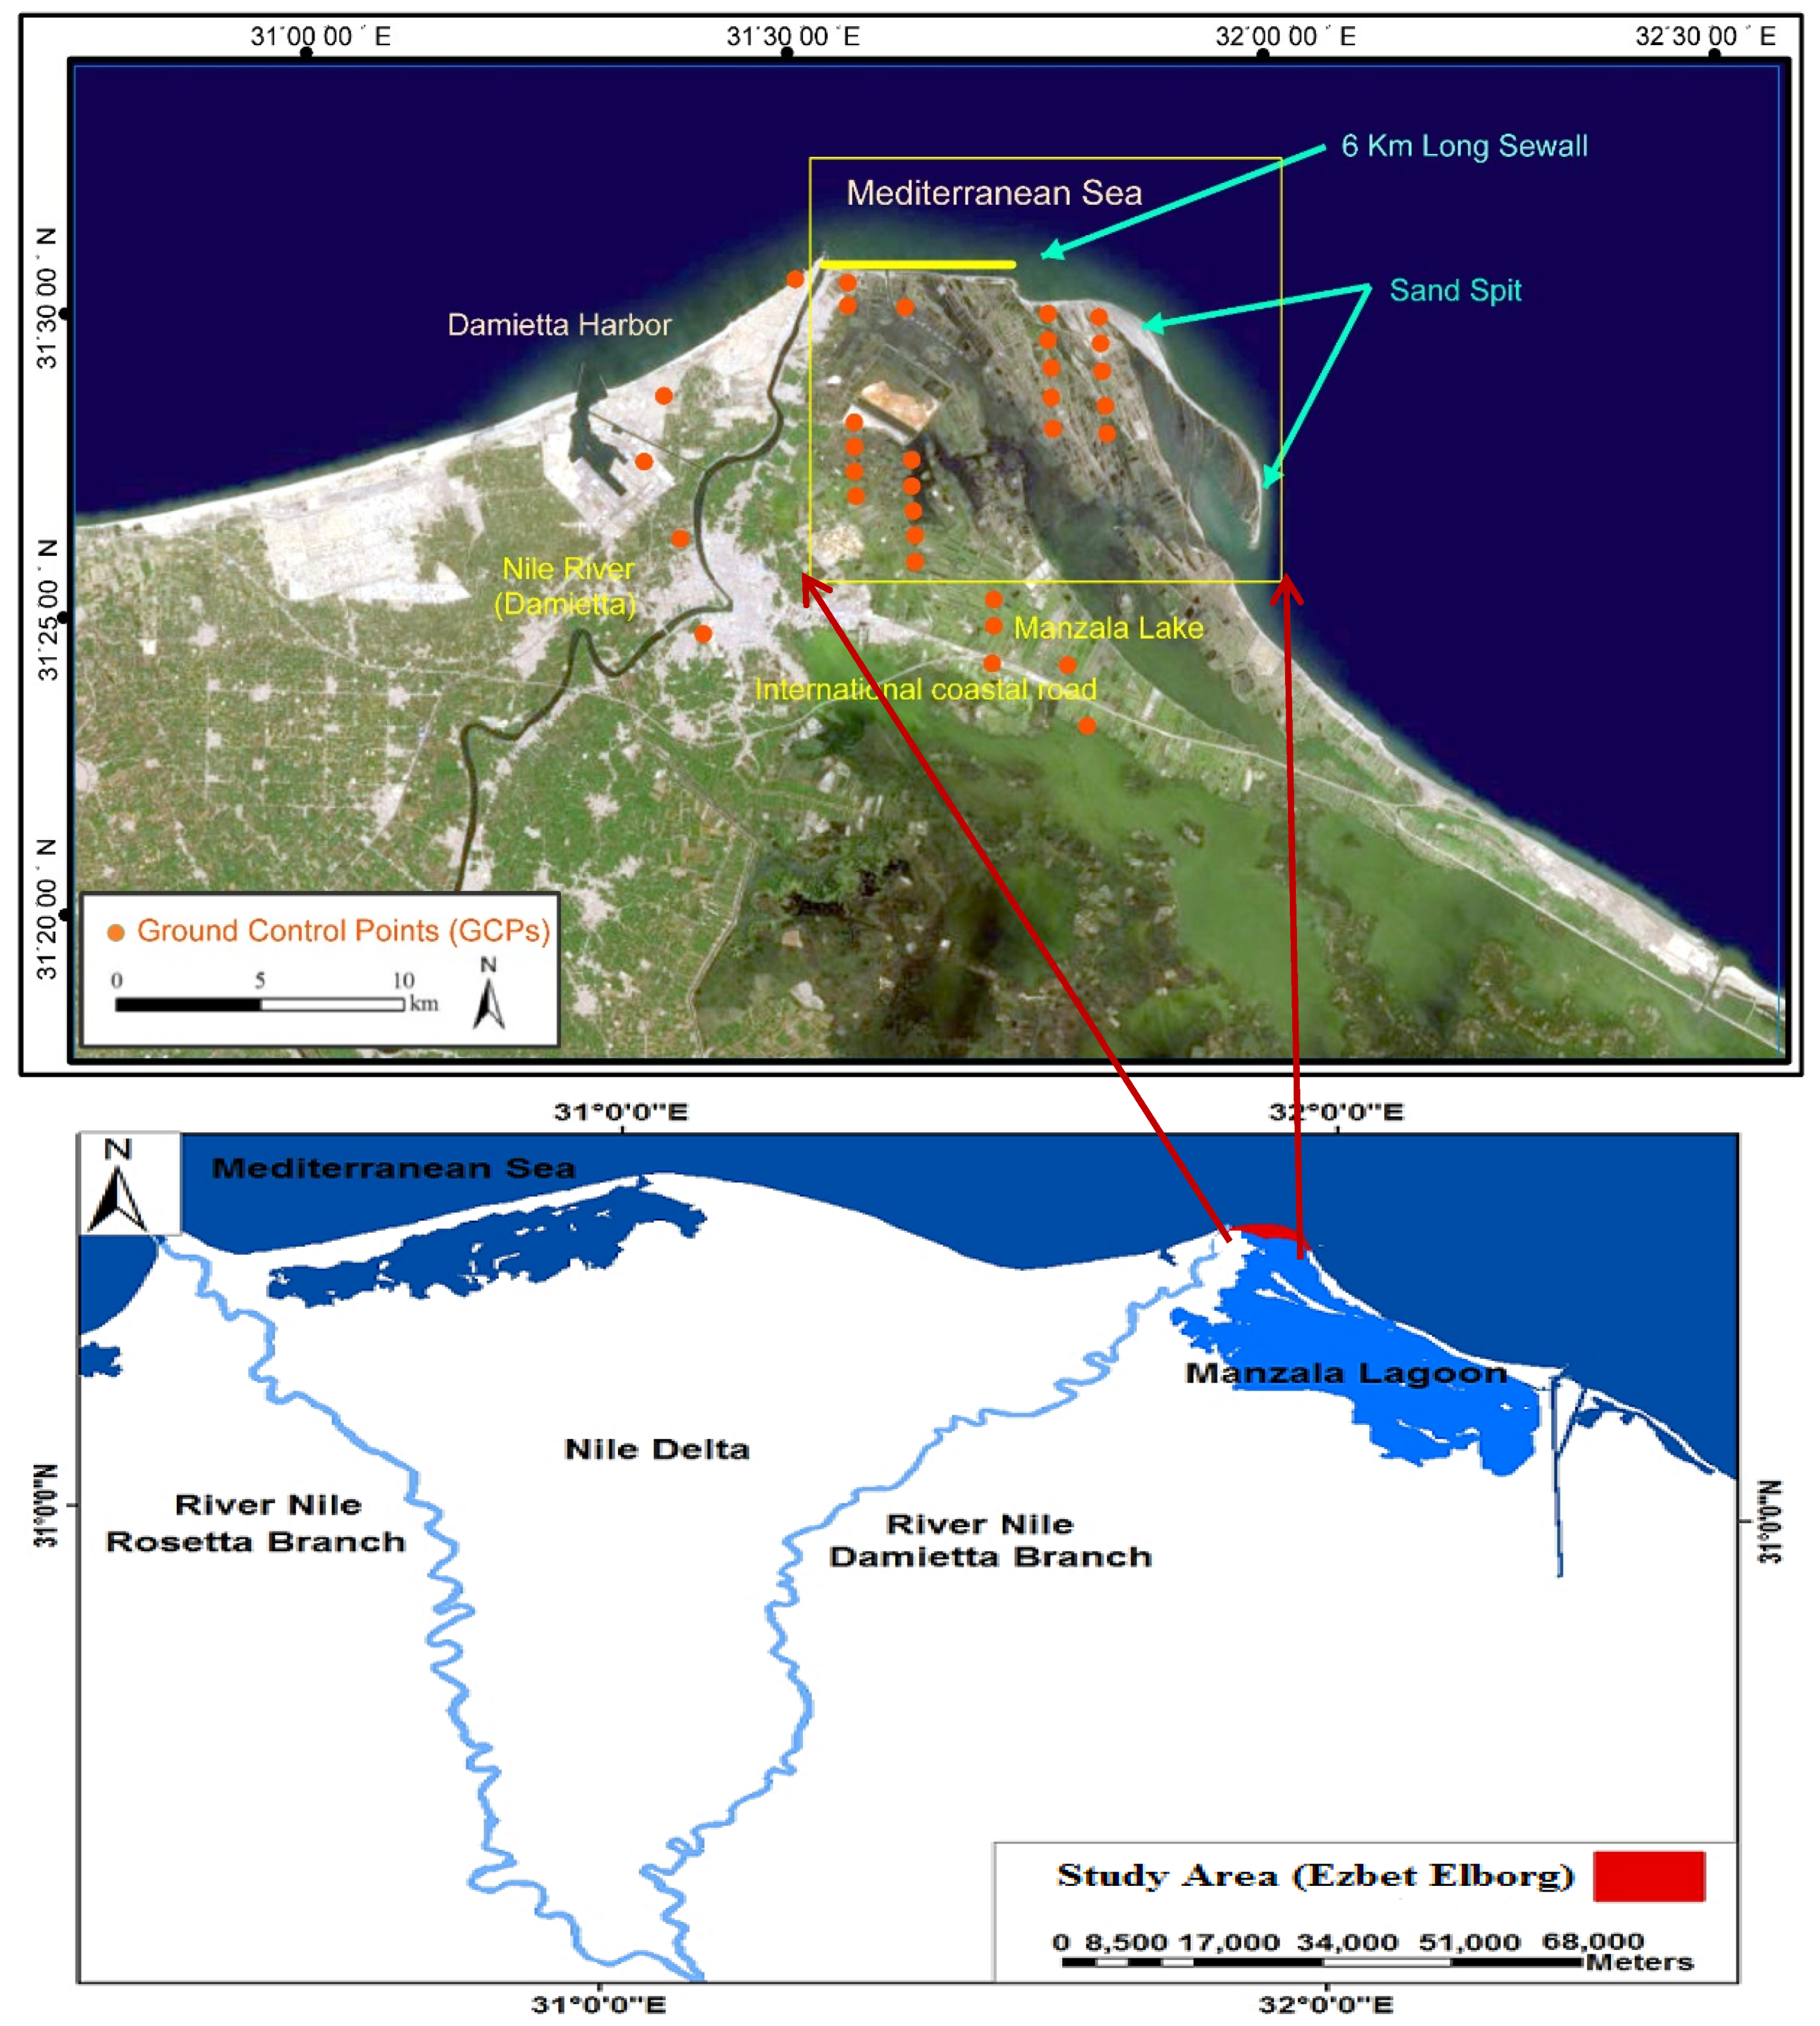 nile delta coastal erosion case study